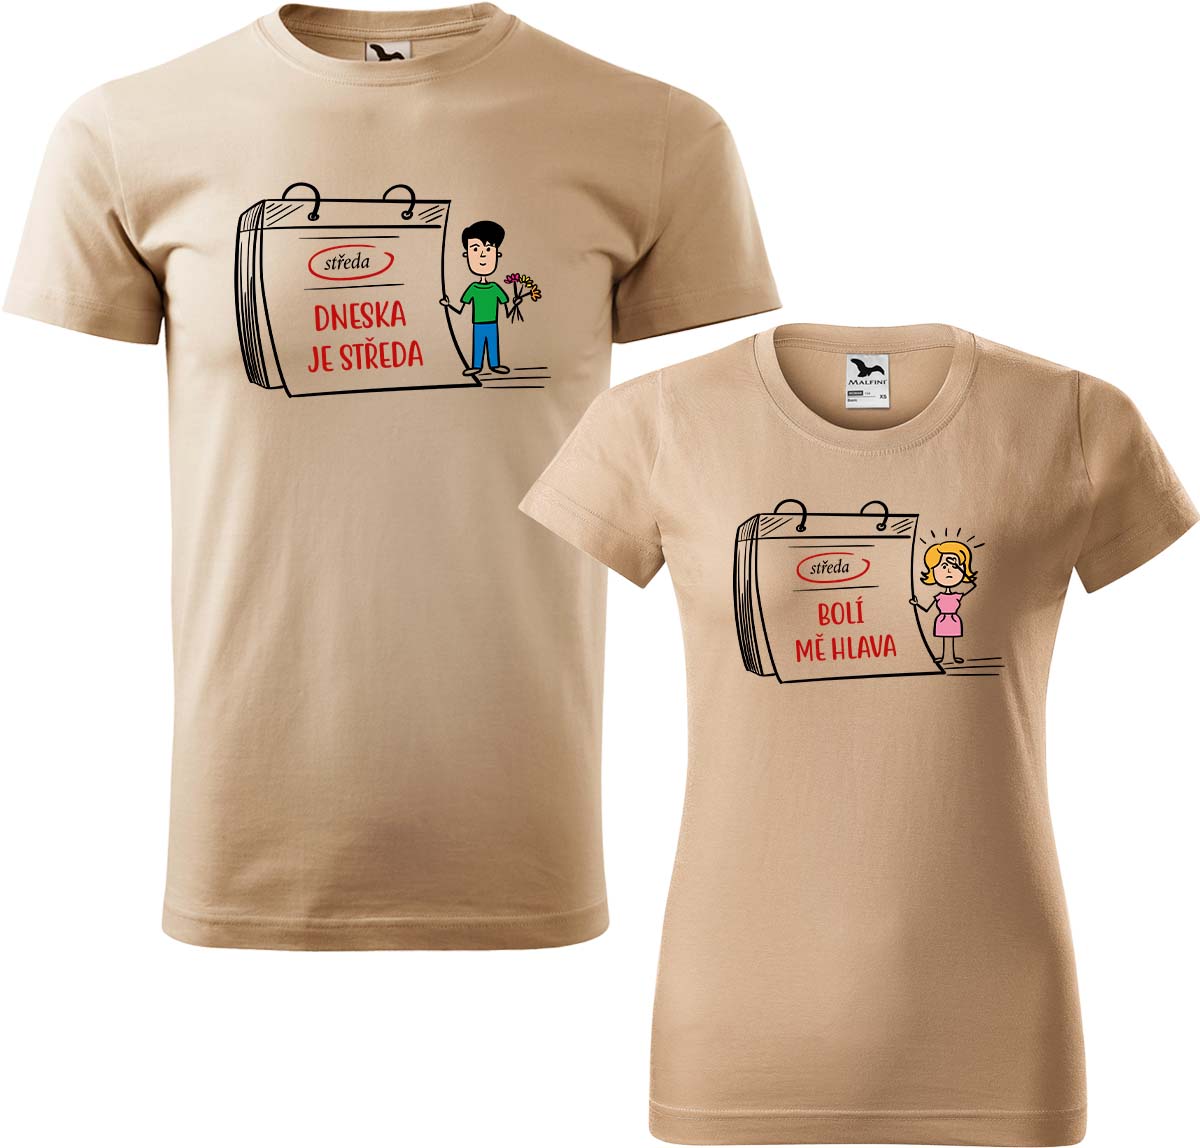 Trička pro páry - Dneska je středa Barva: Písková (08), Velikost dámské tričko: 3XL, Velikost pánské tričko: XL